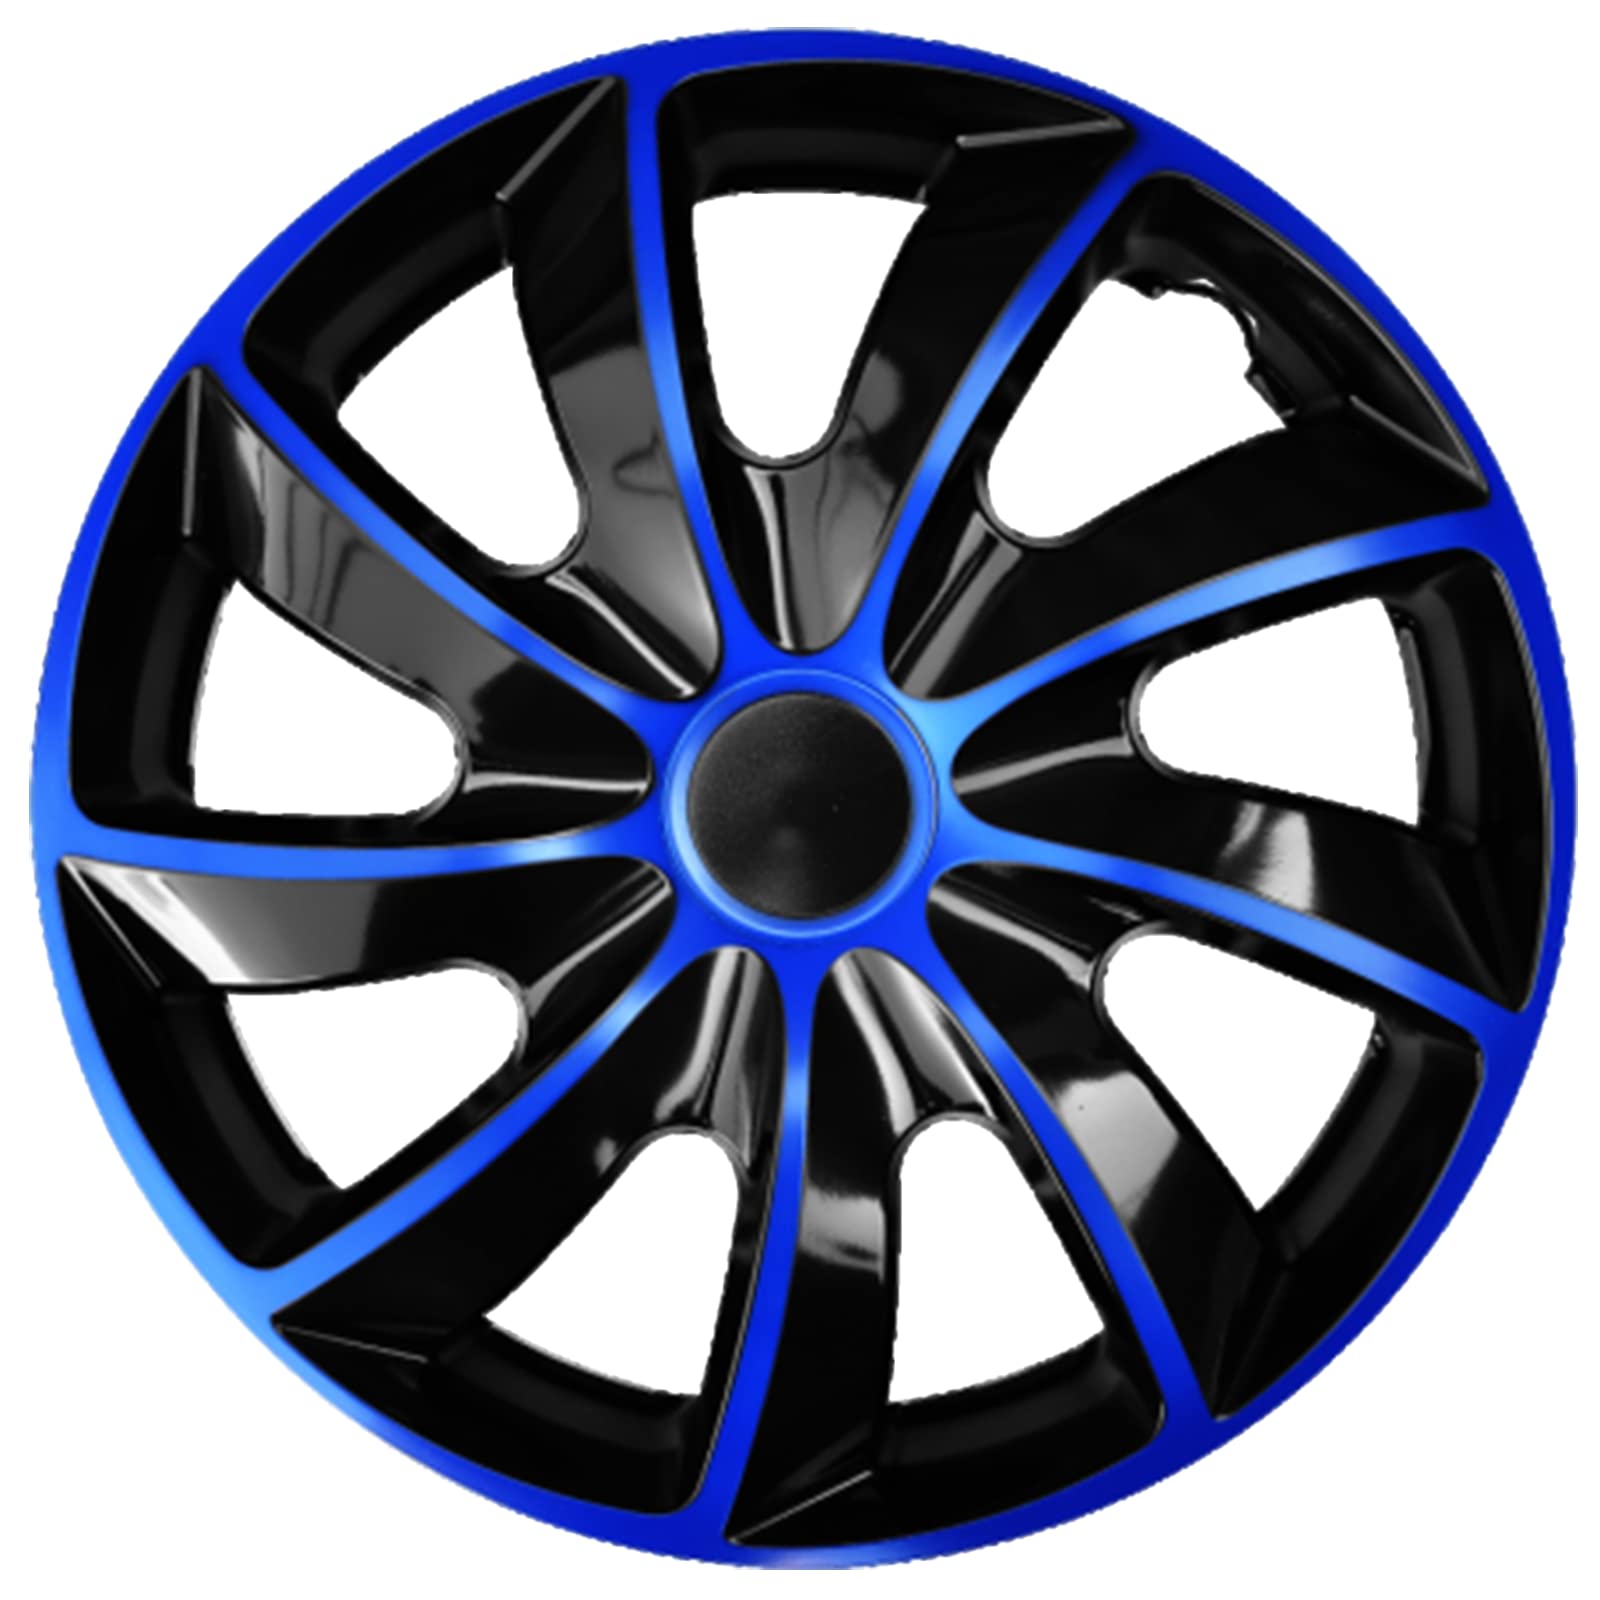 Ohmtronixx Quad Radkappen 16 Zoll 4er Set, blau-schwarz, Radzierblenden aus ABS Kunststoff von ohmtronixx